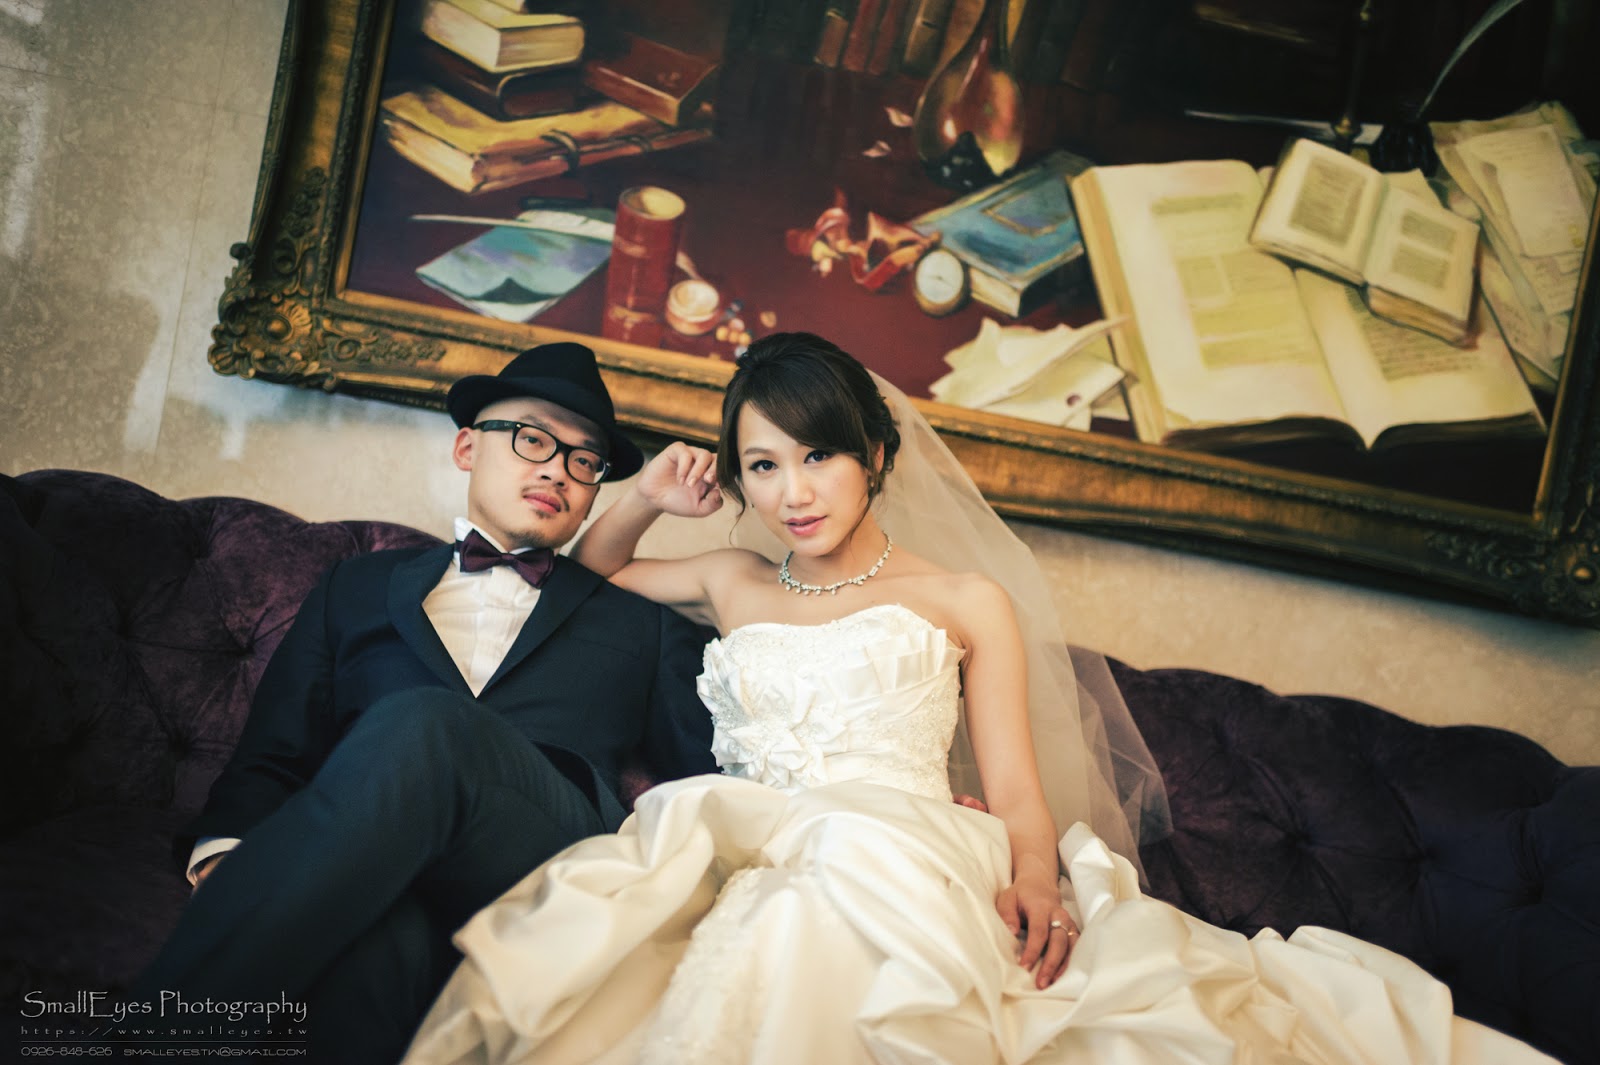 婚攝,小眼攝影,婚禮紀實,婚禮紀錄,婚紗,寫真,台北,香格里拉,遠東國際大飯店,遠企